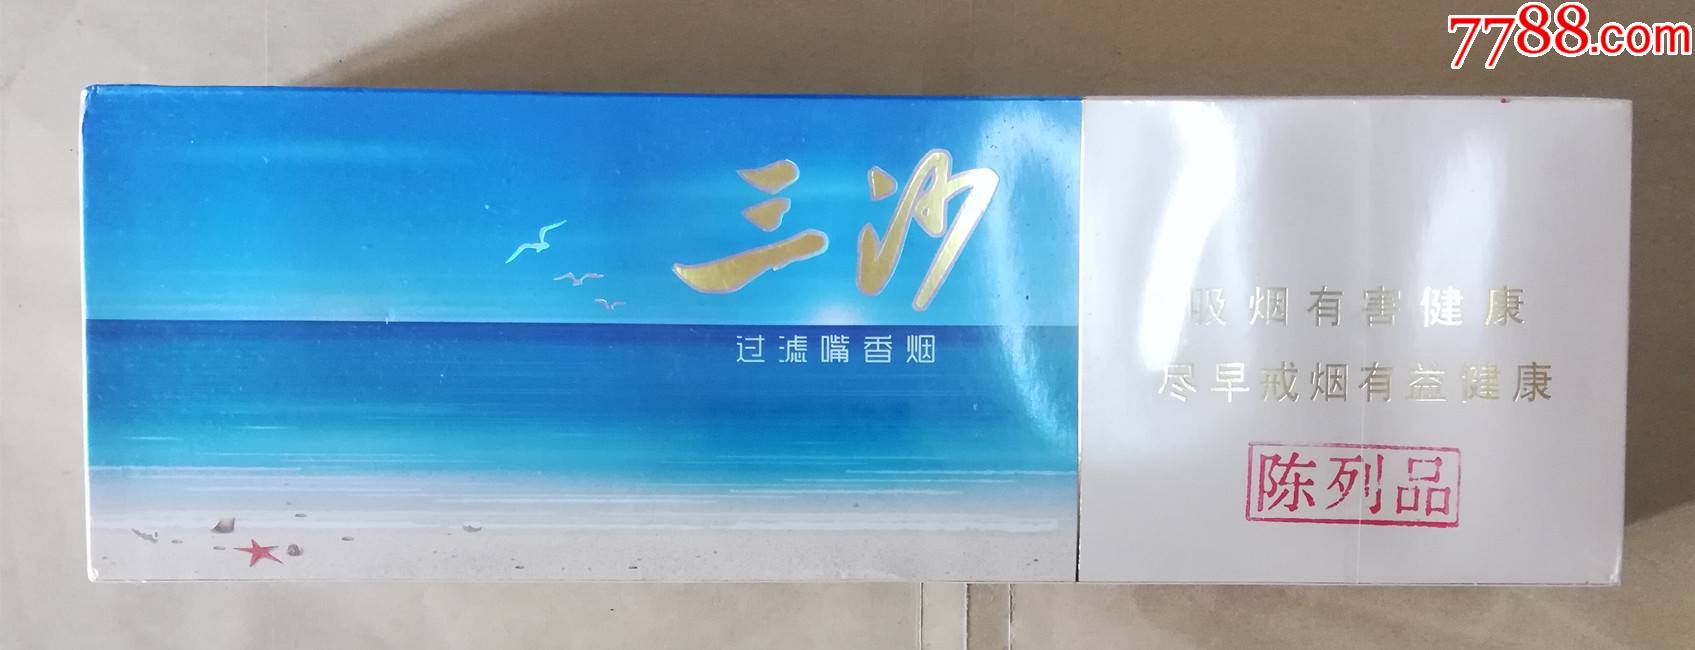 3d条盒标三沙宝岛海南红塔卷烟有限责任公司陈列用品烟条盒